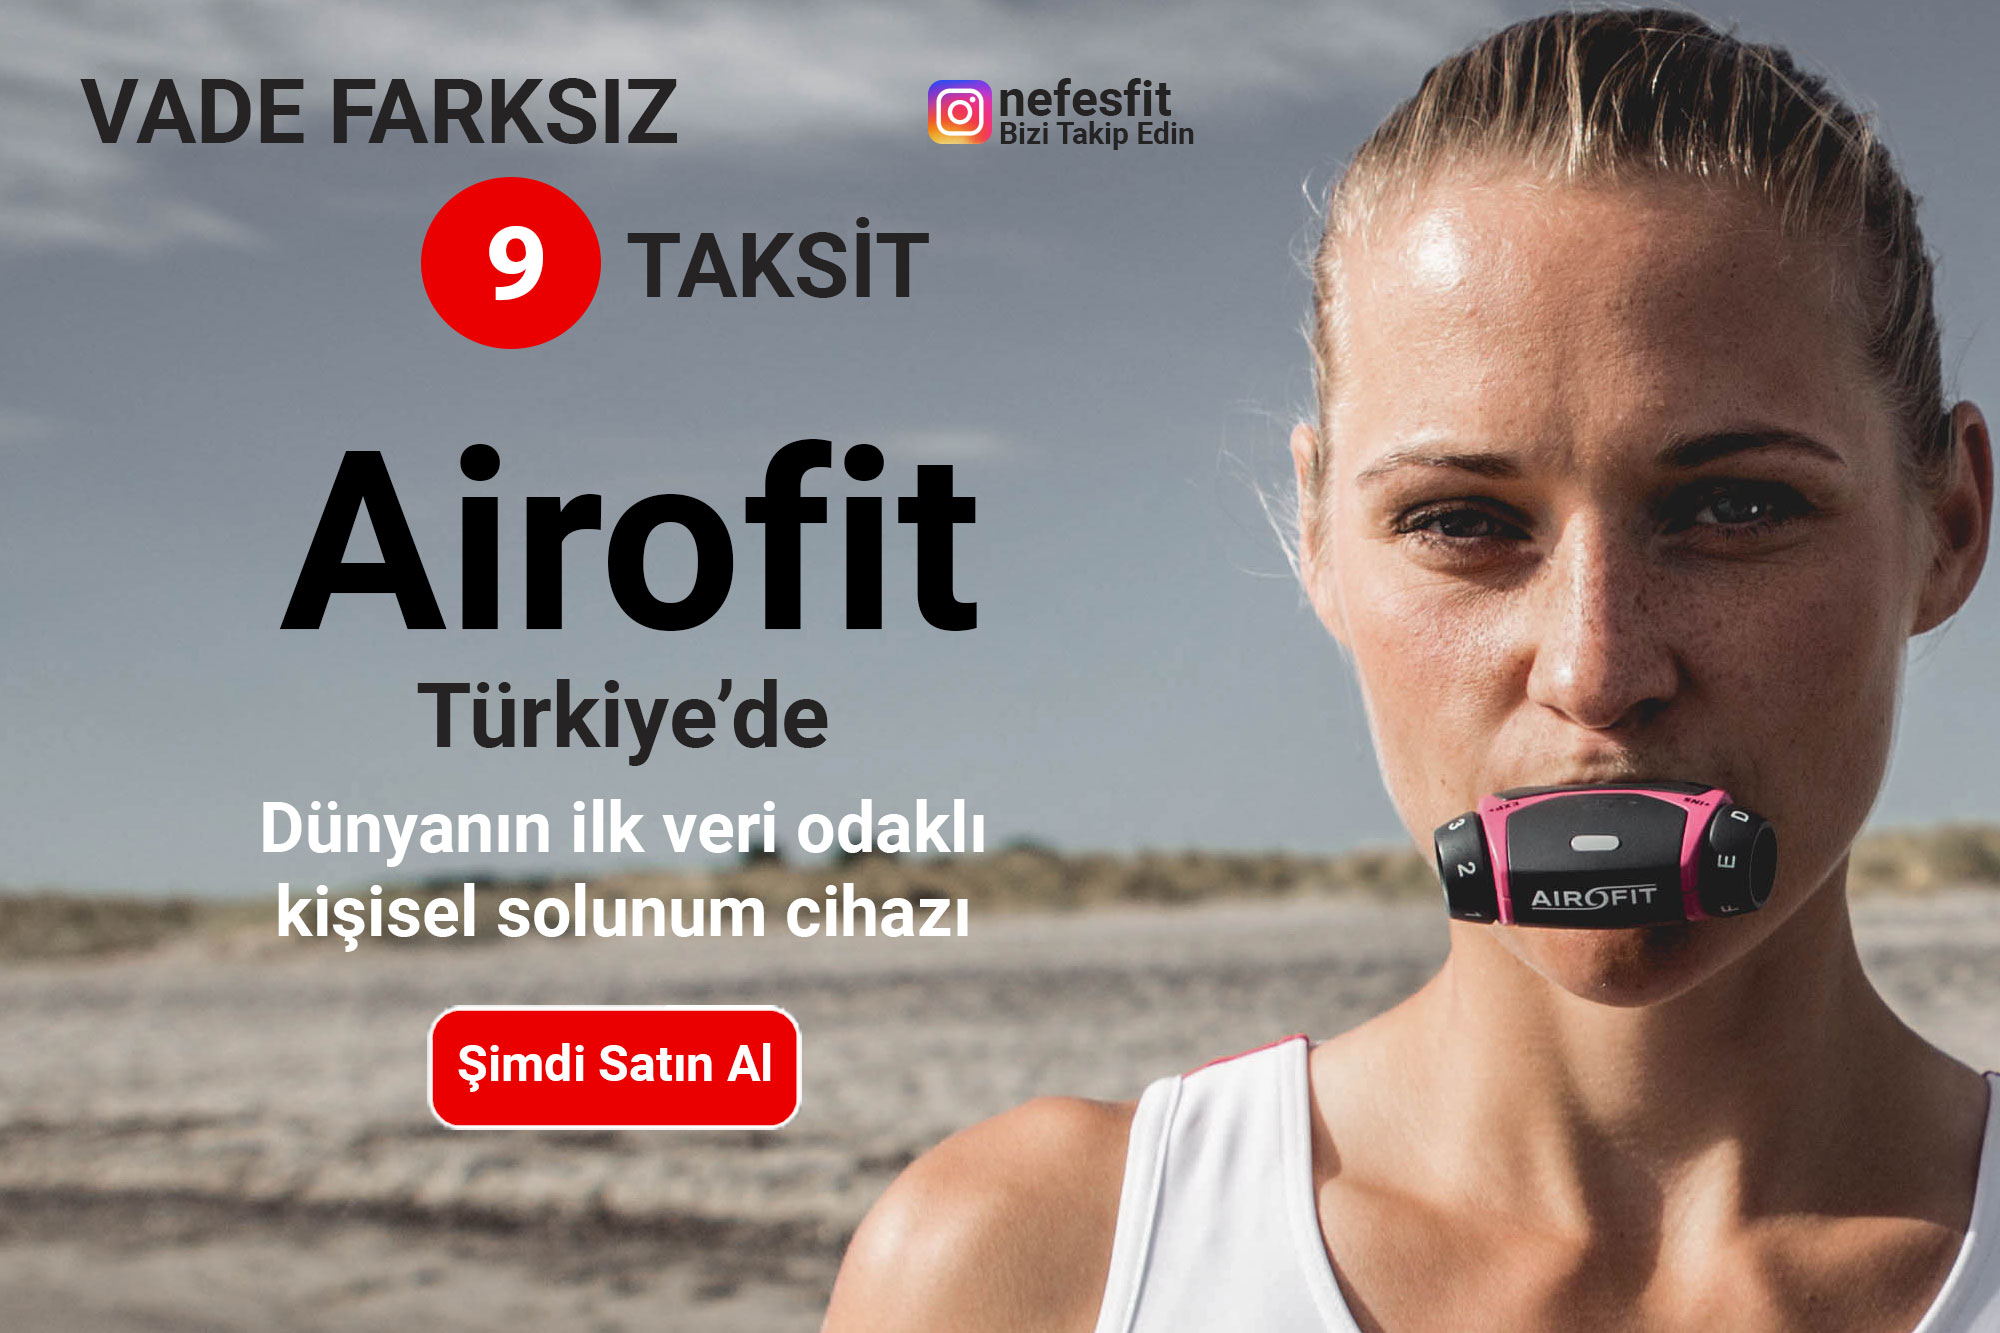 airofit price